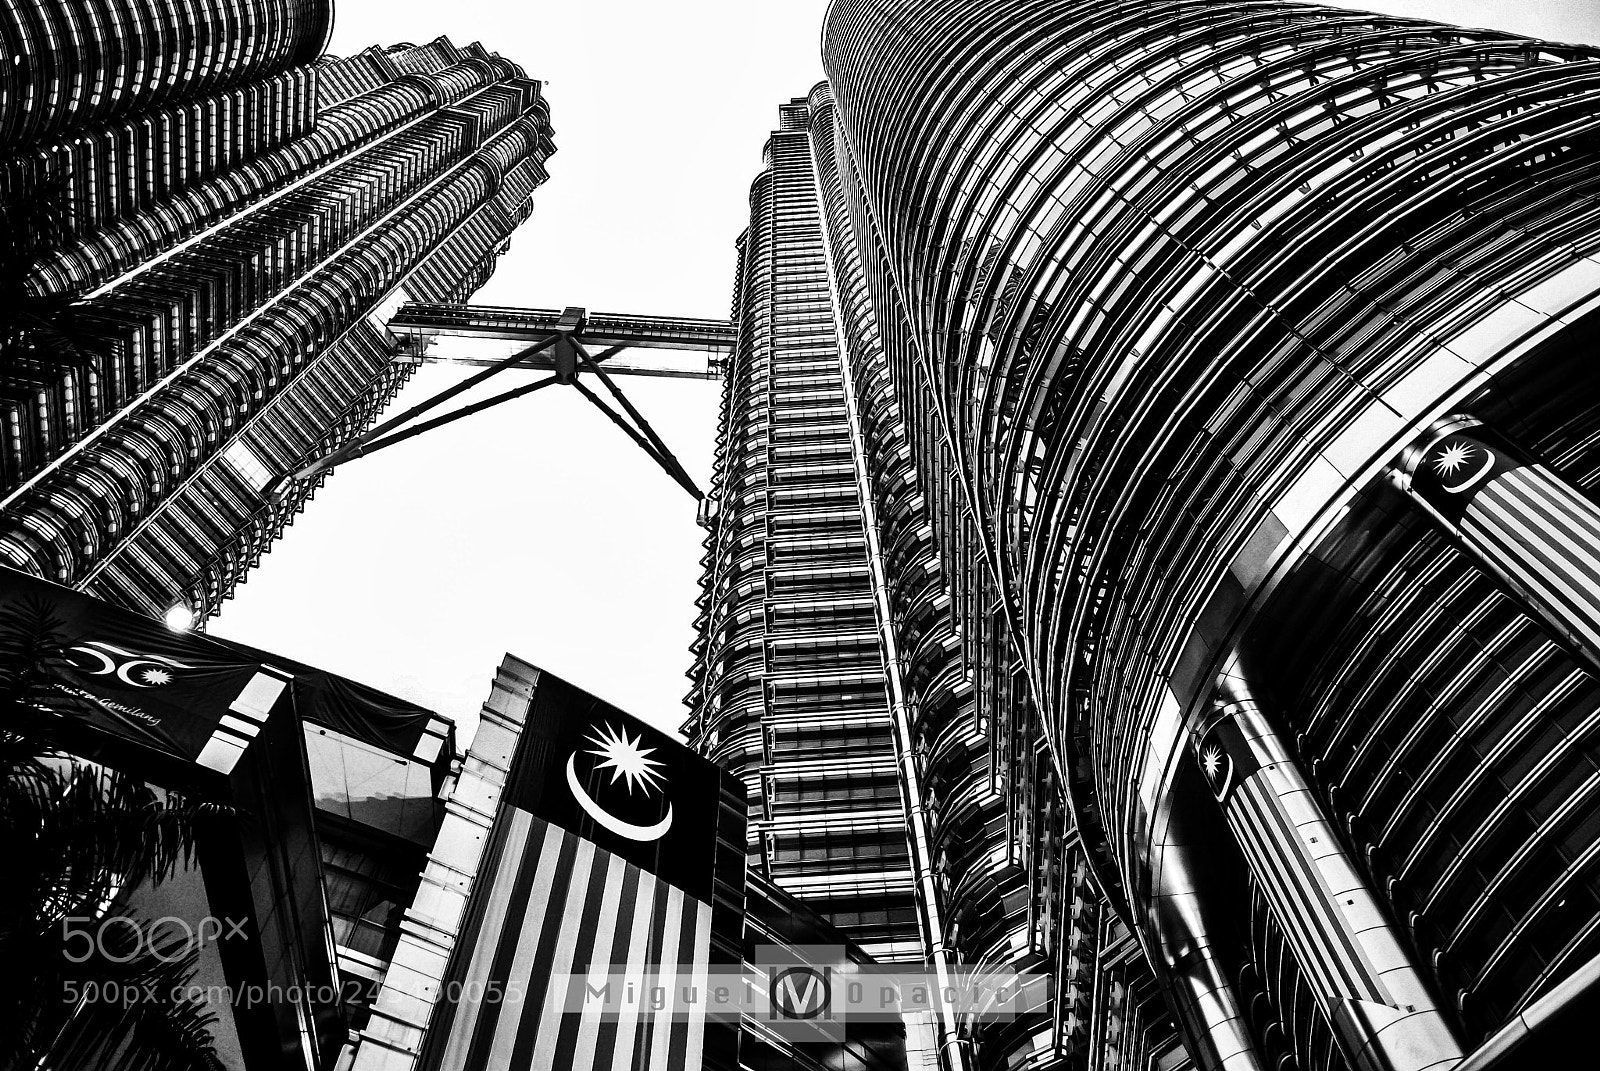 Nikon D200 sample photo. Petronas tower photography